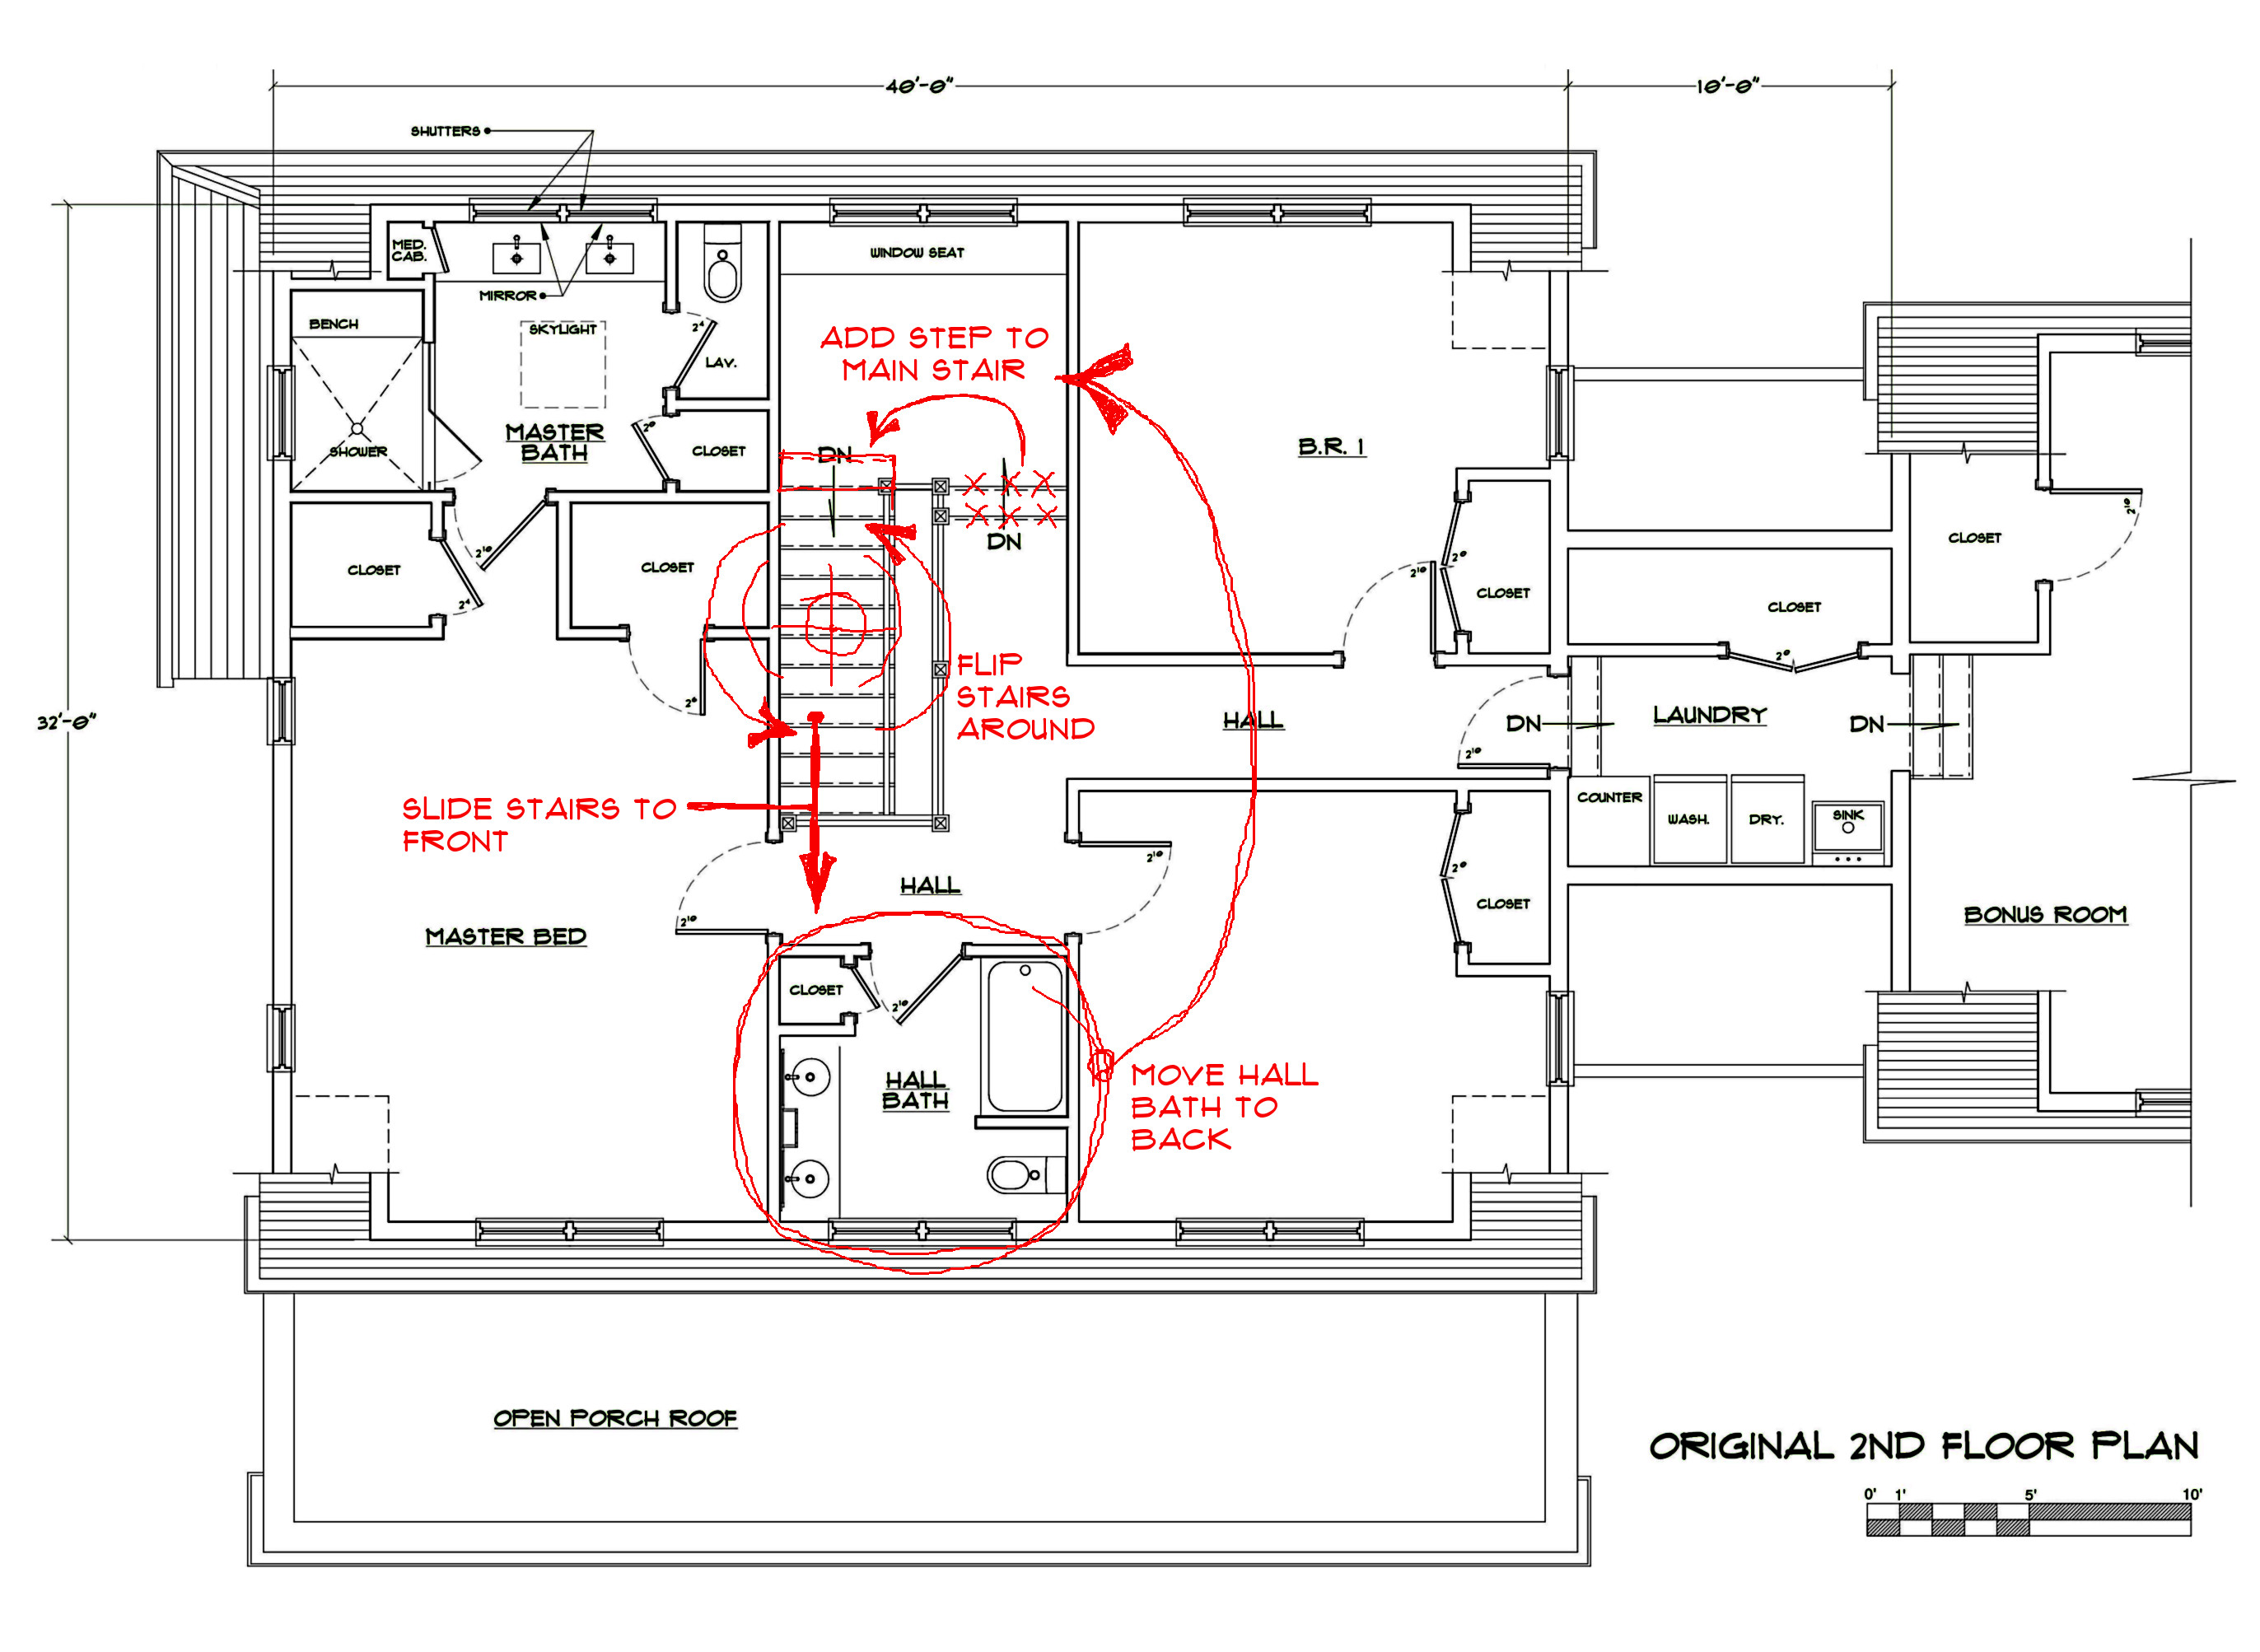 modify floor plan part 2 picture 9